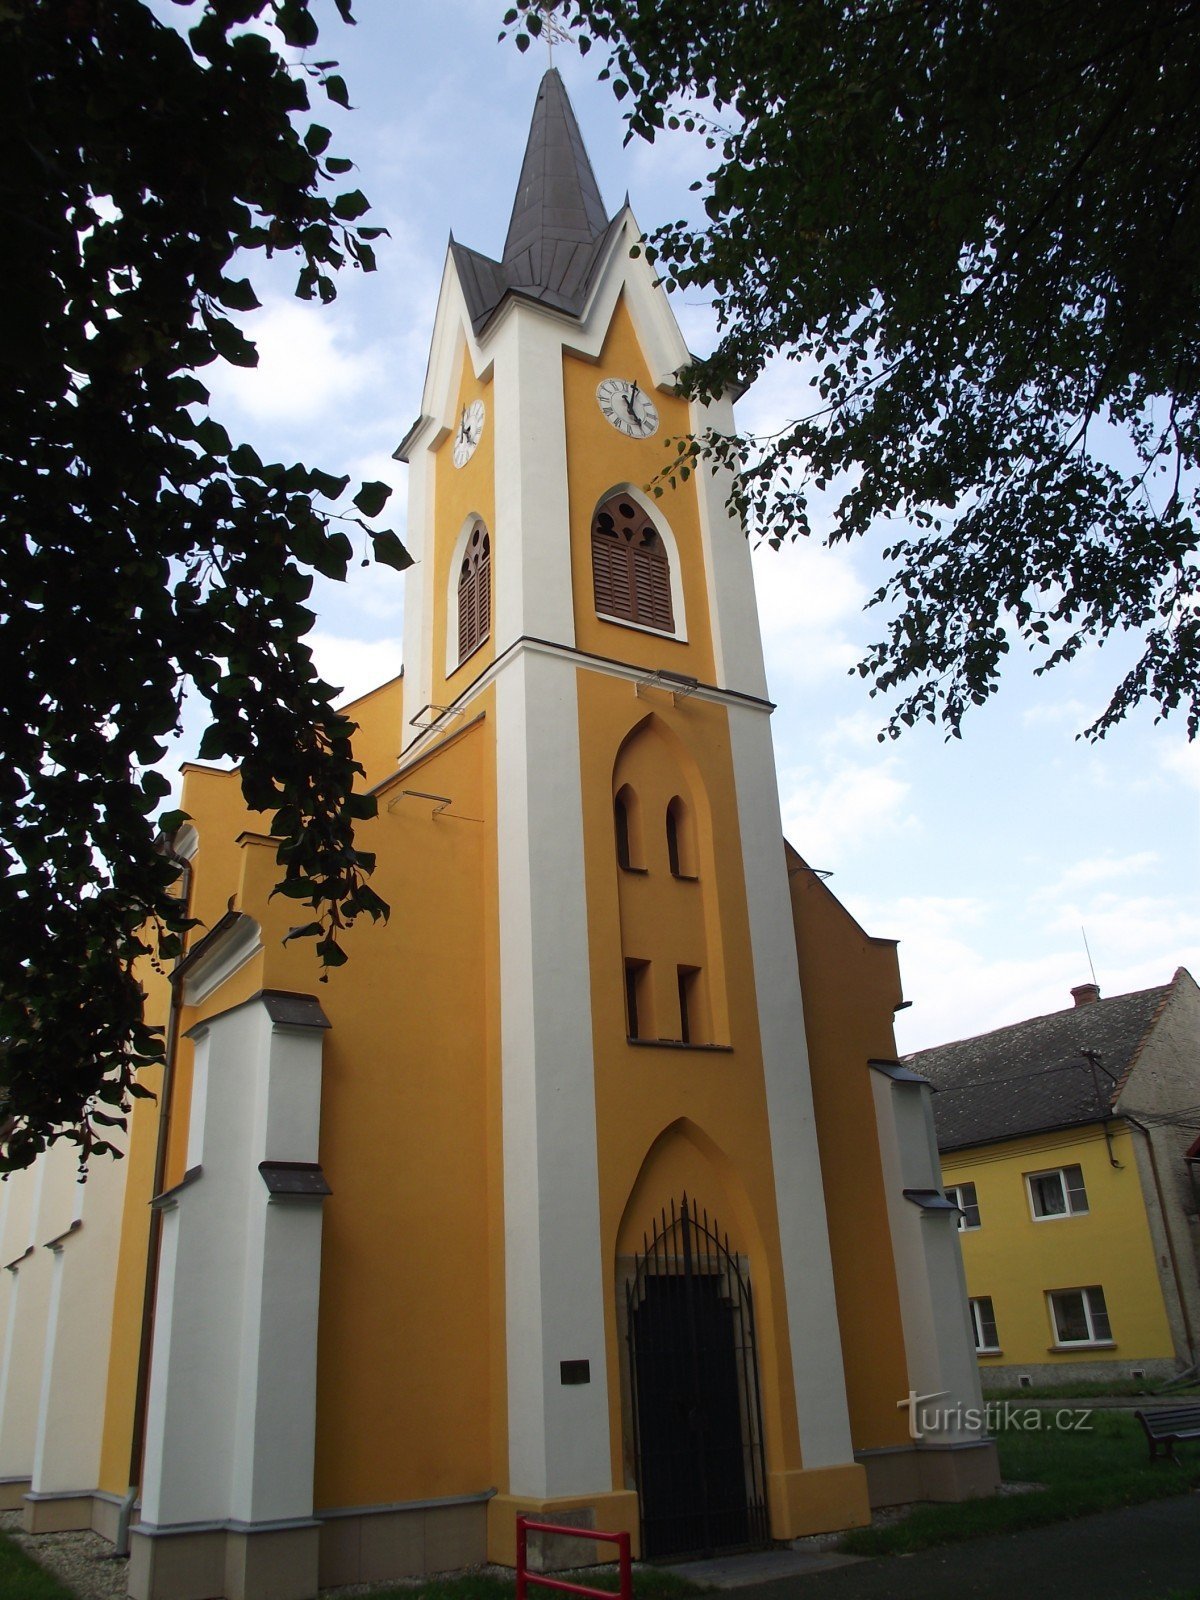 Želechovice (w pobliżu Uničova) - kaplica św. Cyryla i Metodego